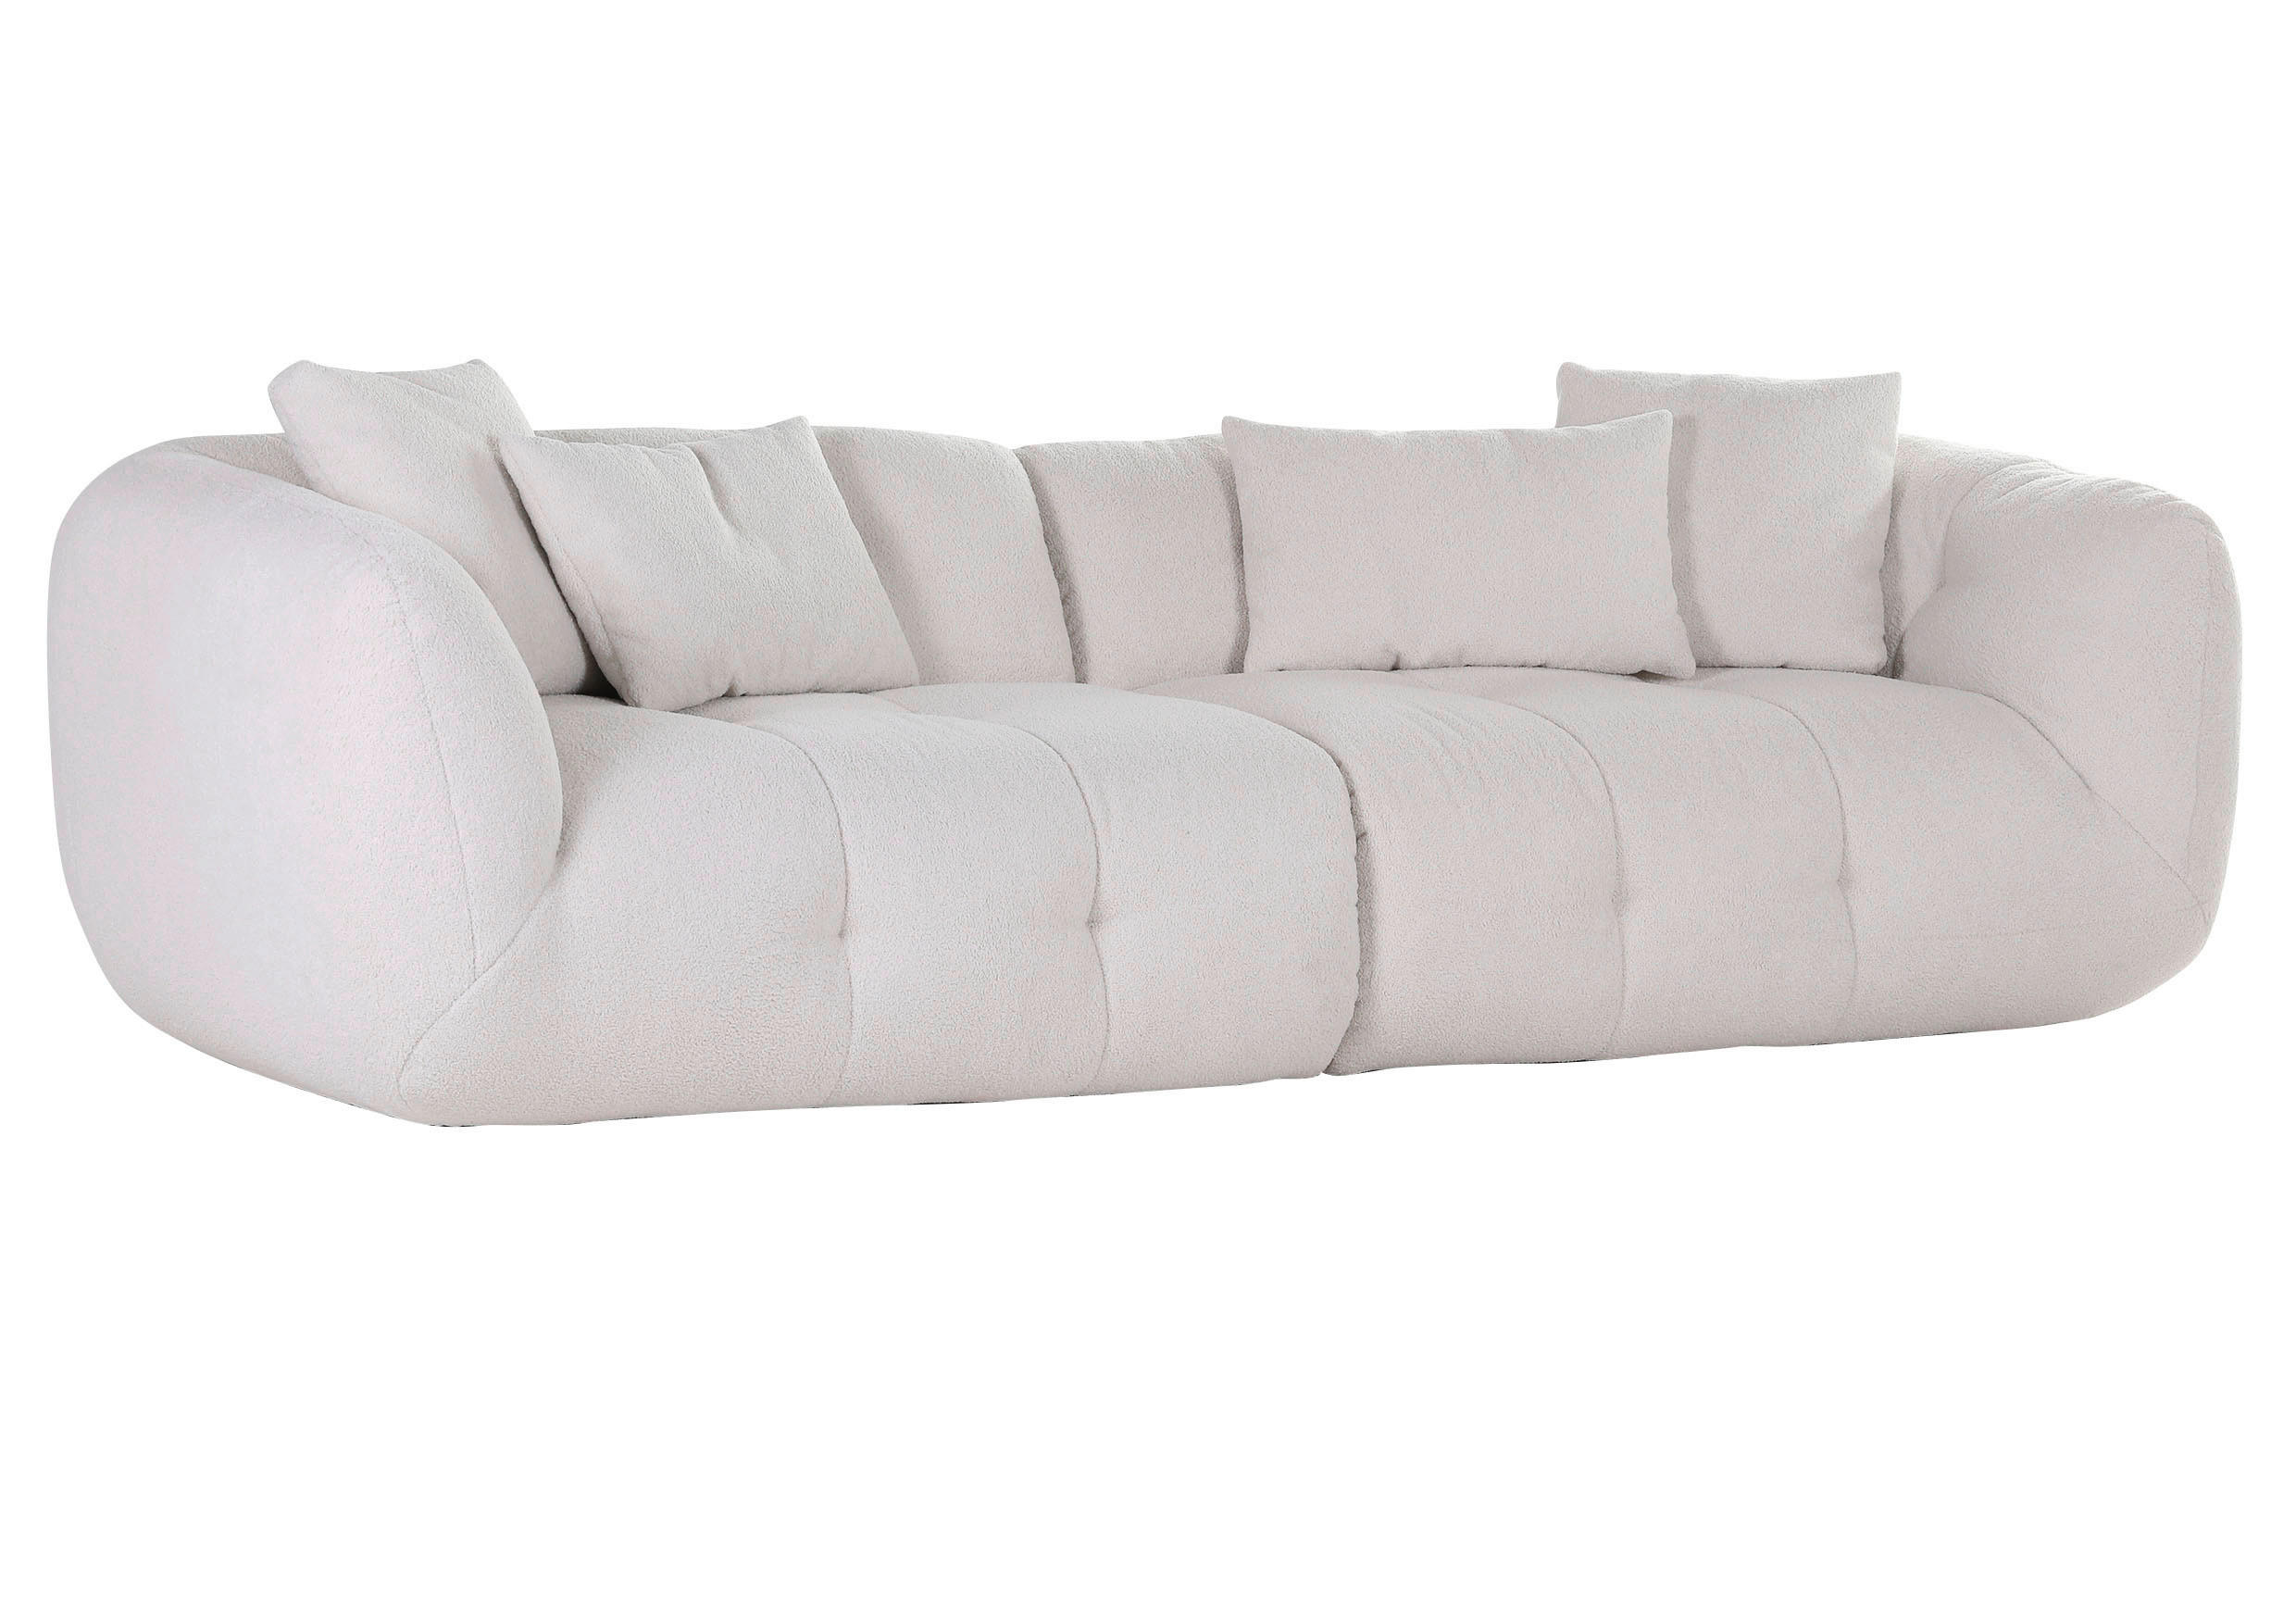 CANAPEA BIGSOFA textil alb  - alb/negru, Design, plastic/textil (280/74/110cm) - Xora